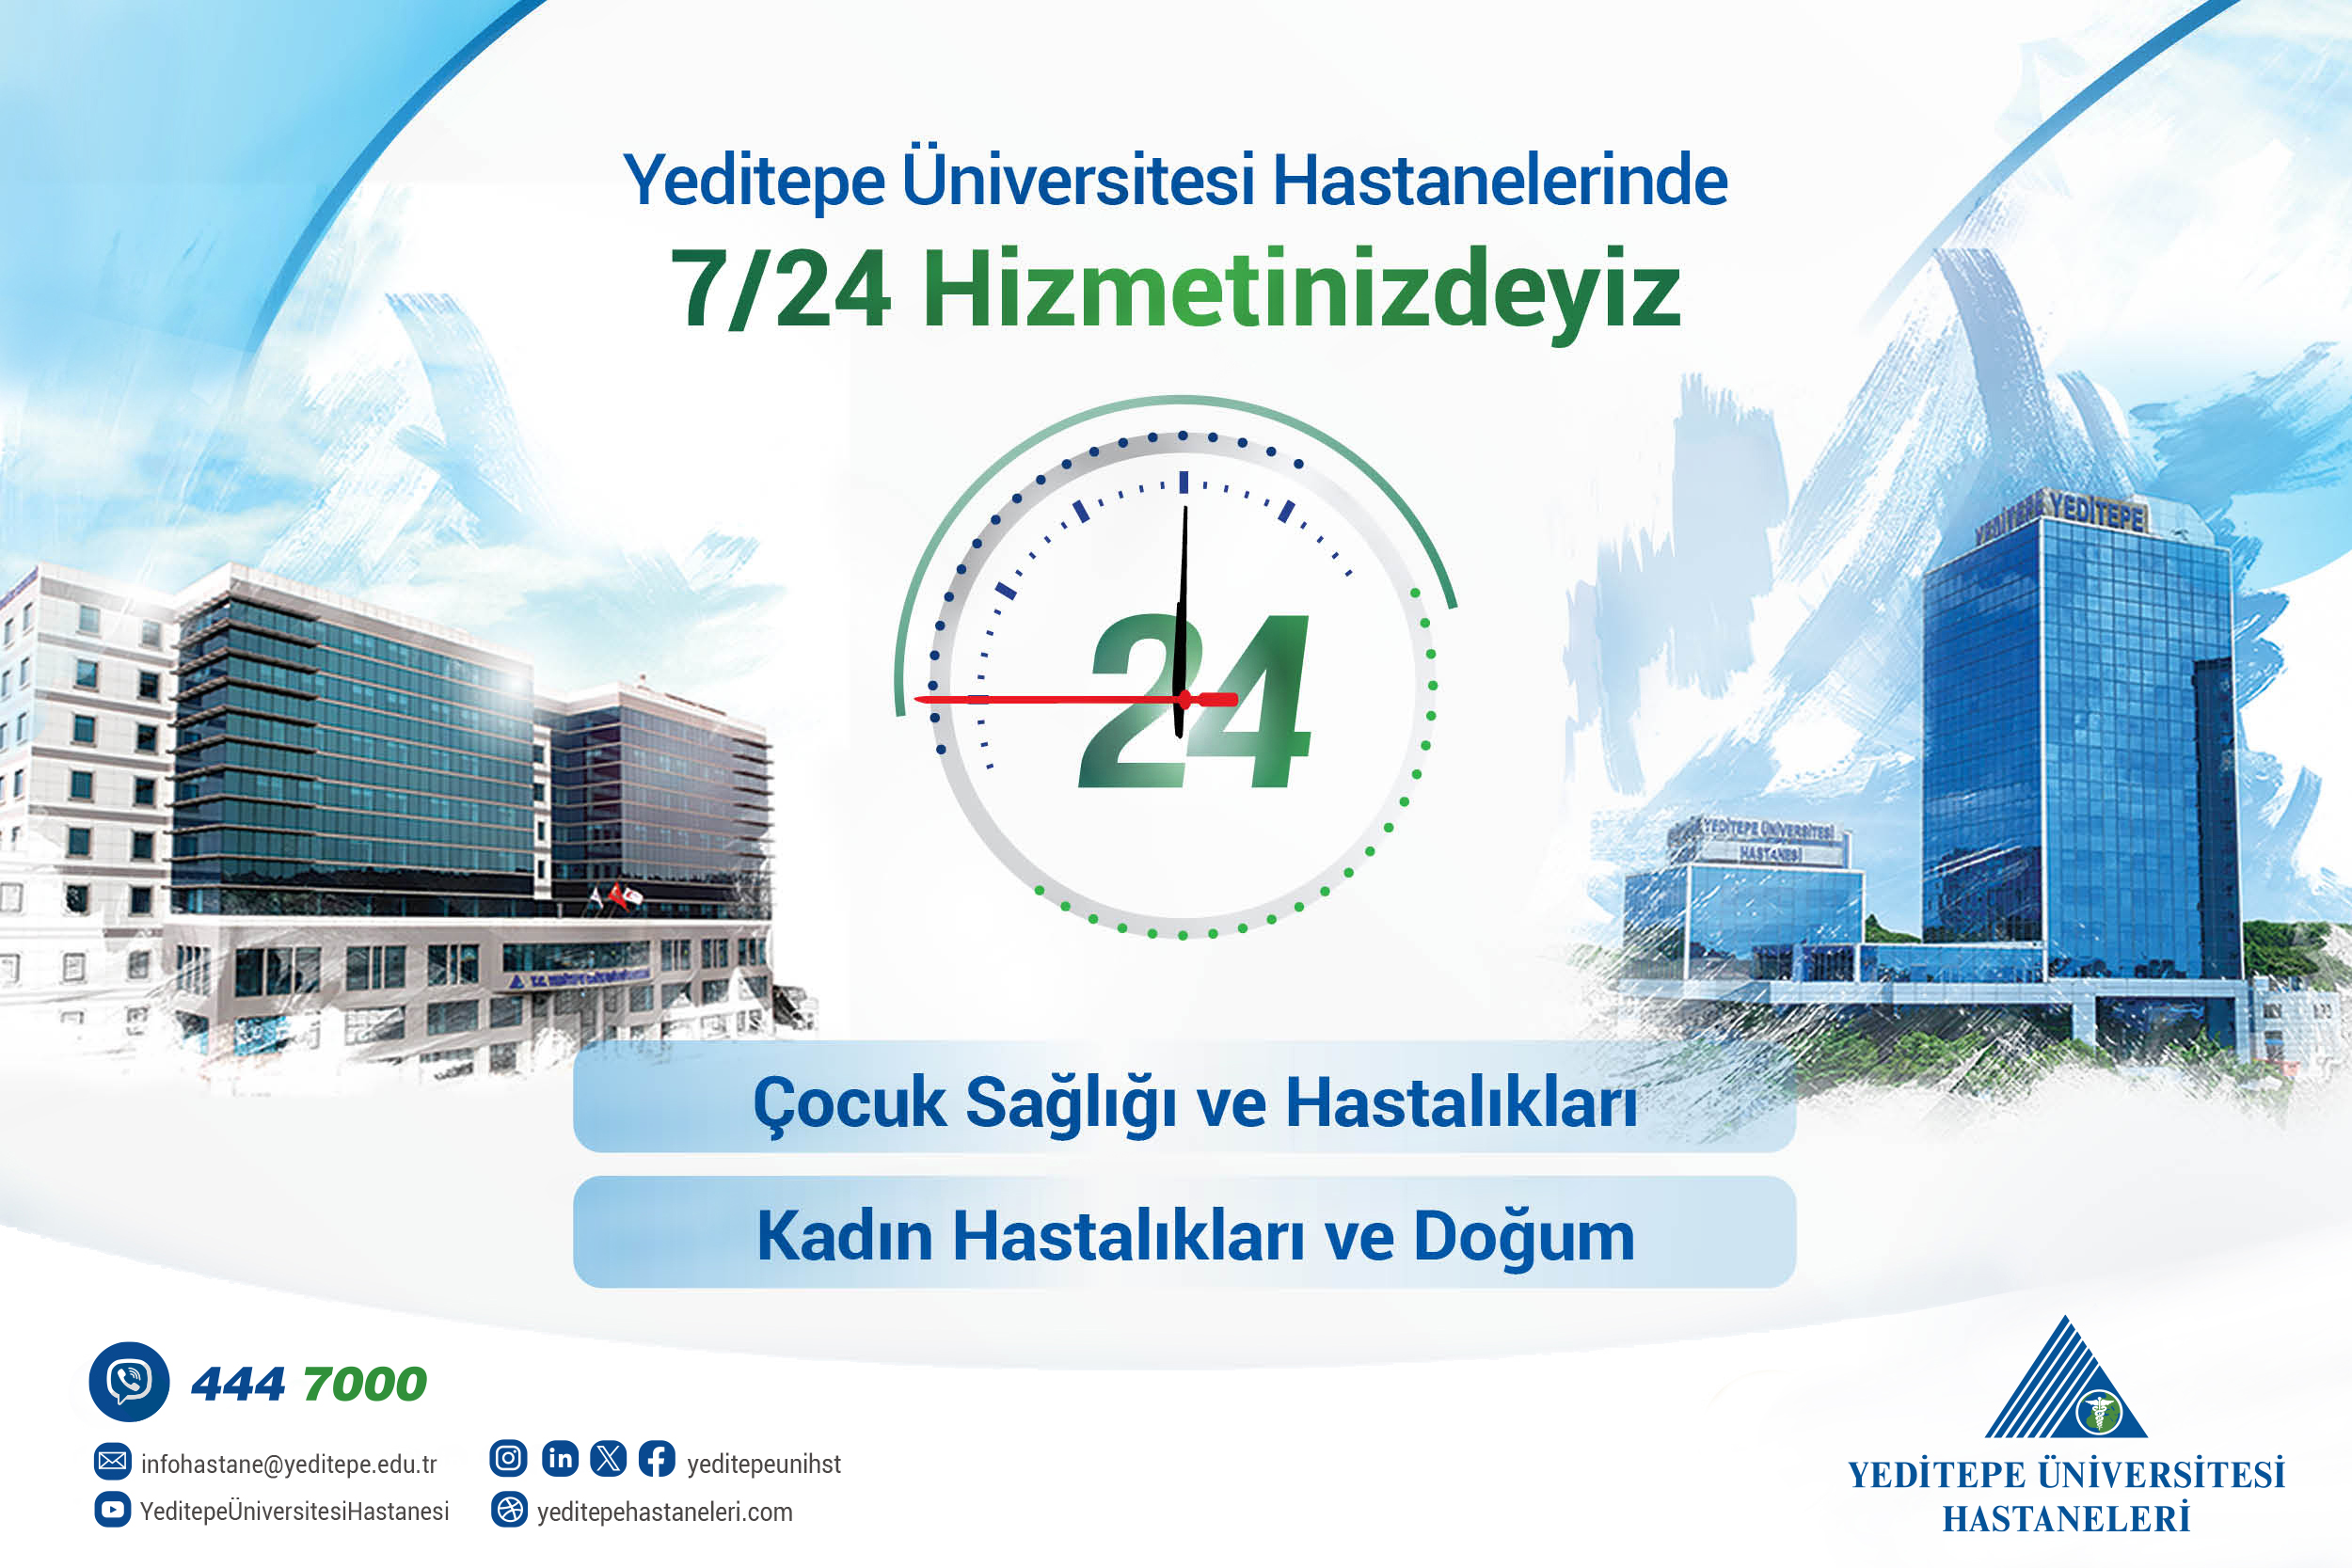 Yeditepe Üniversitesi Hastanelerinde 7/24 Hizmetinizdeyiz